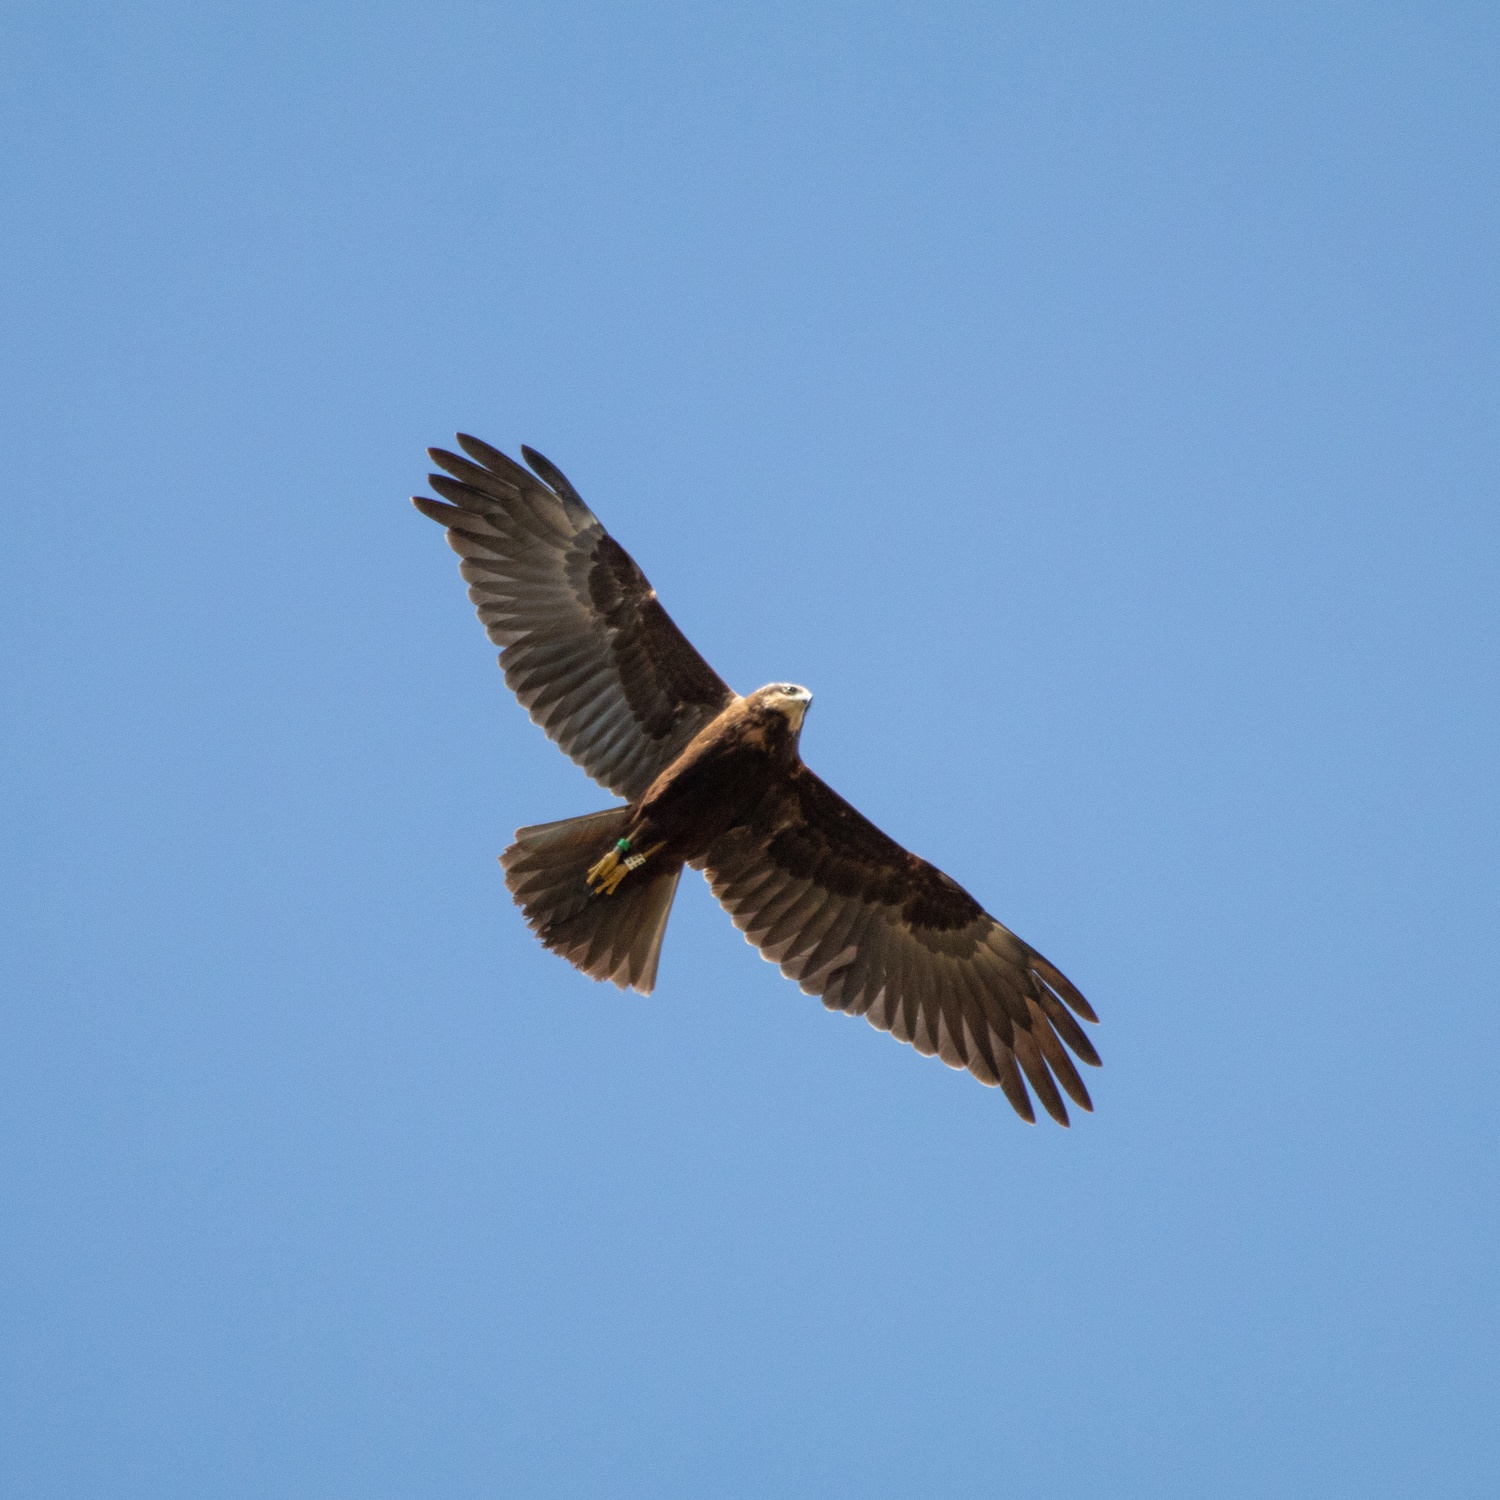 Marsh Harrier flying directly overhead against blue sky